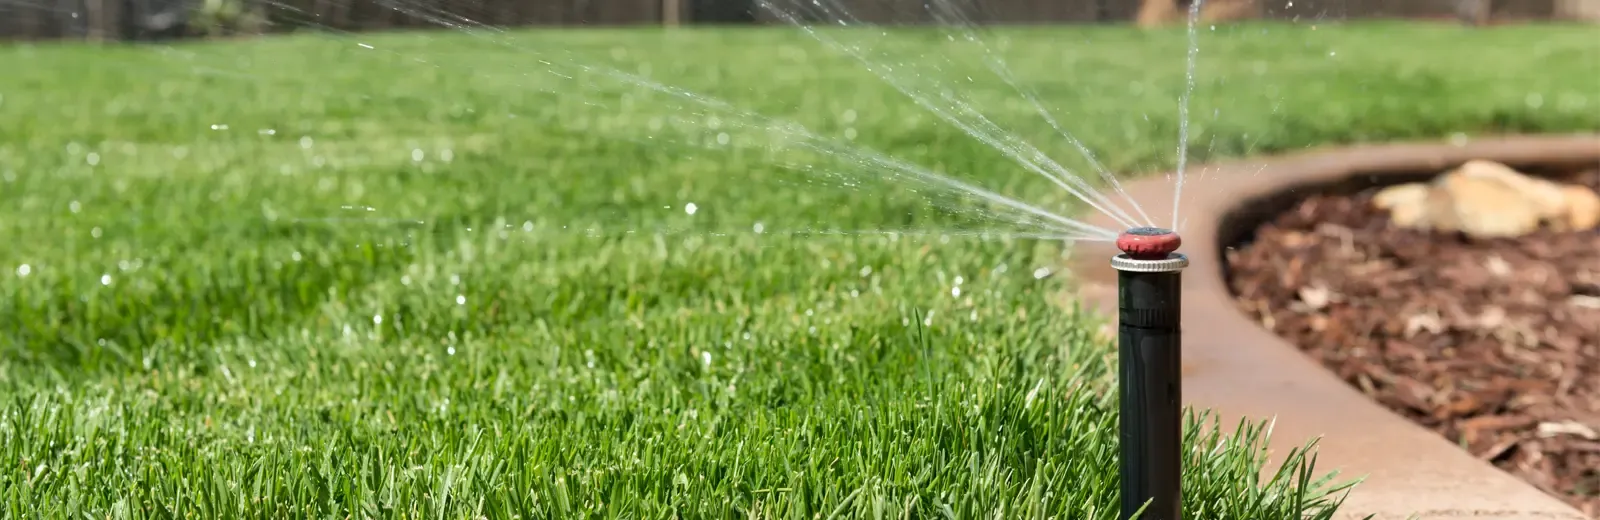 lawn irrigation, sprinkler system